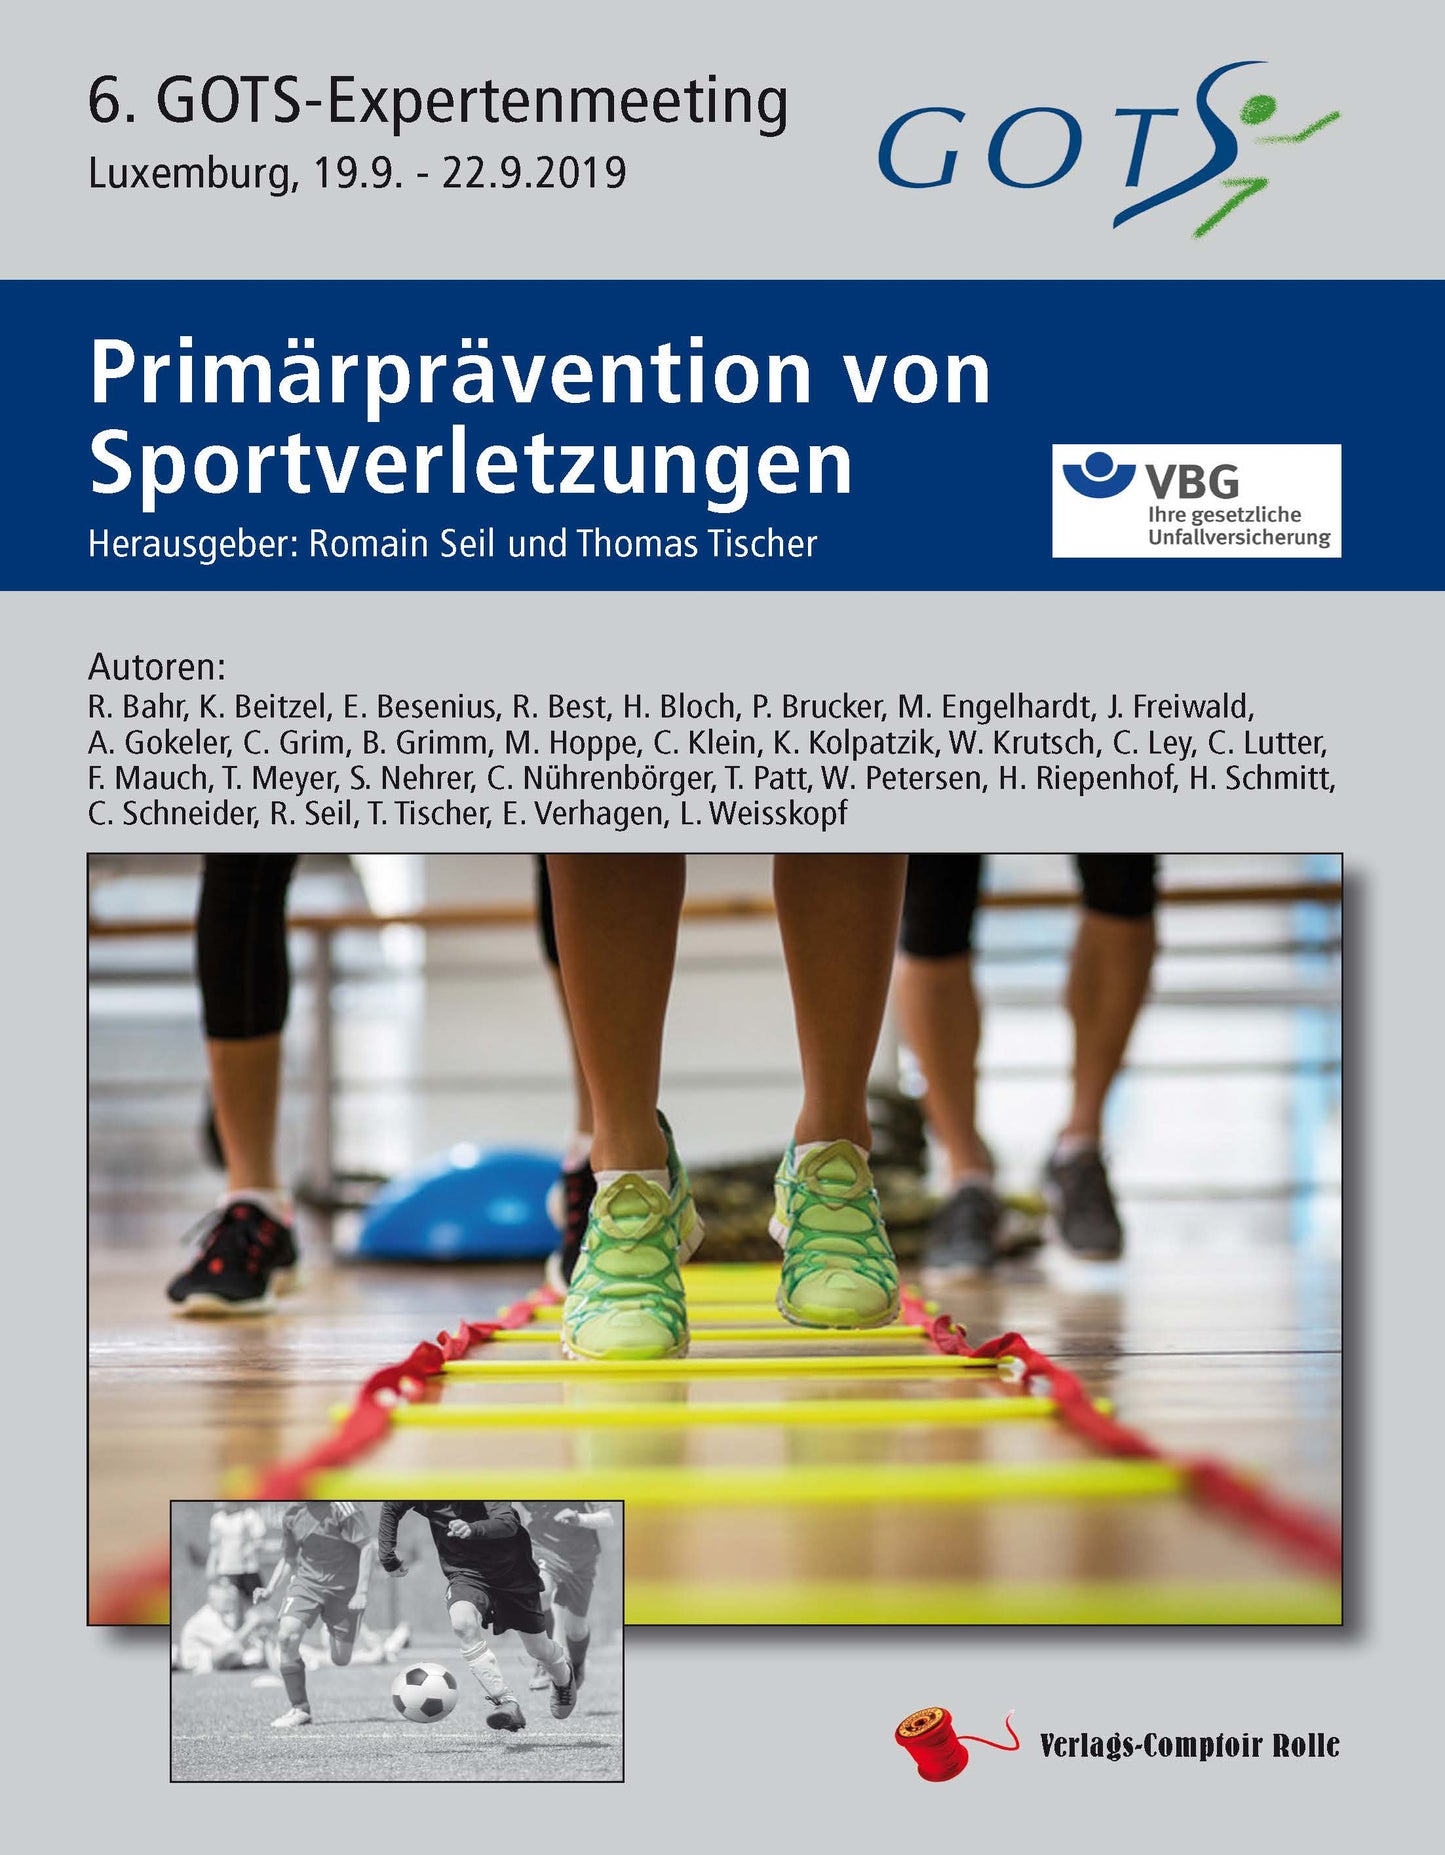 Primärprävention von Sportverletzungen, 6. GOTS-Expertenmeeting Luxemburg 19.09. - 22.09.2019